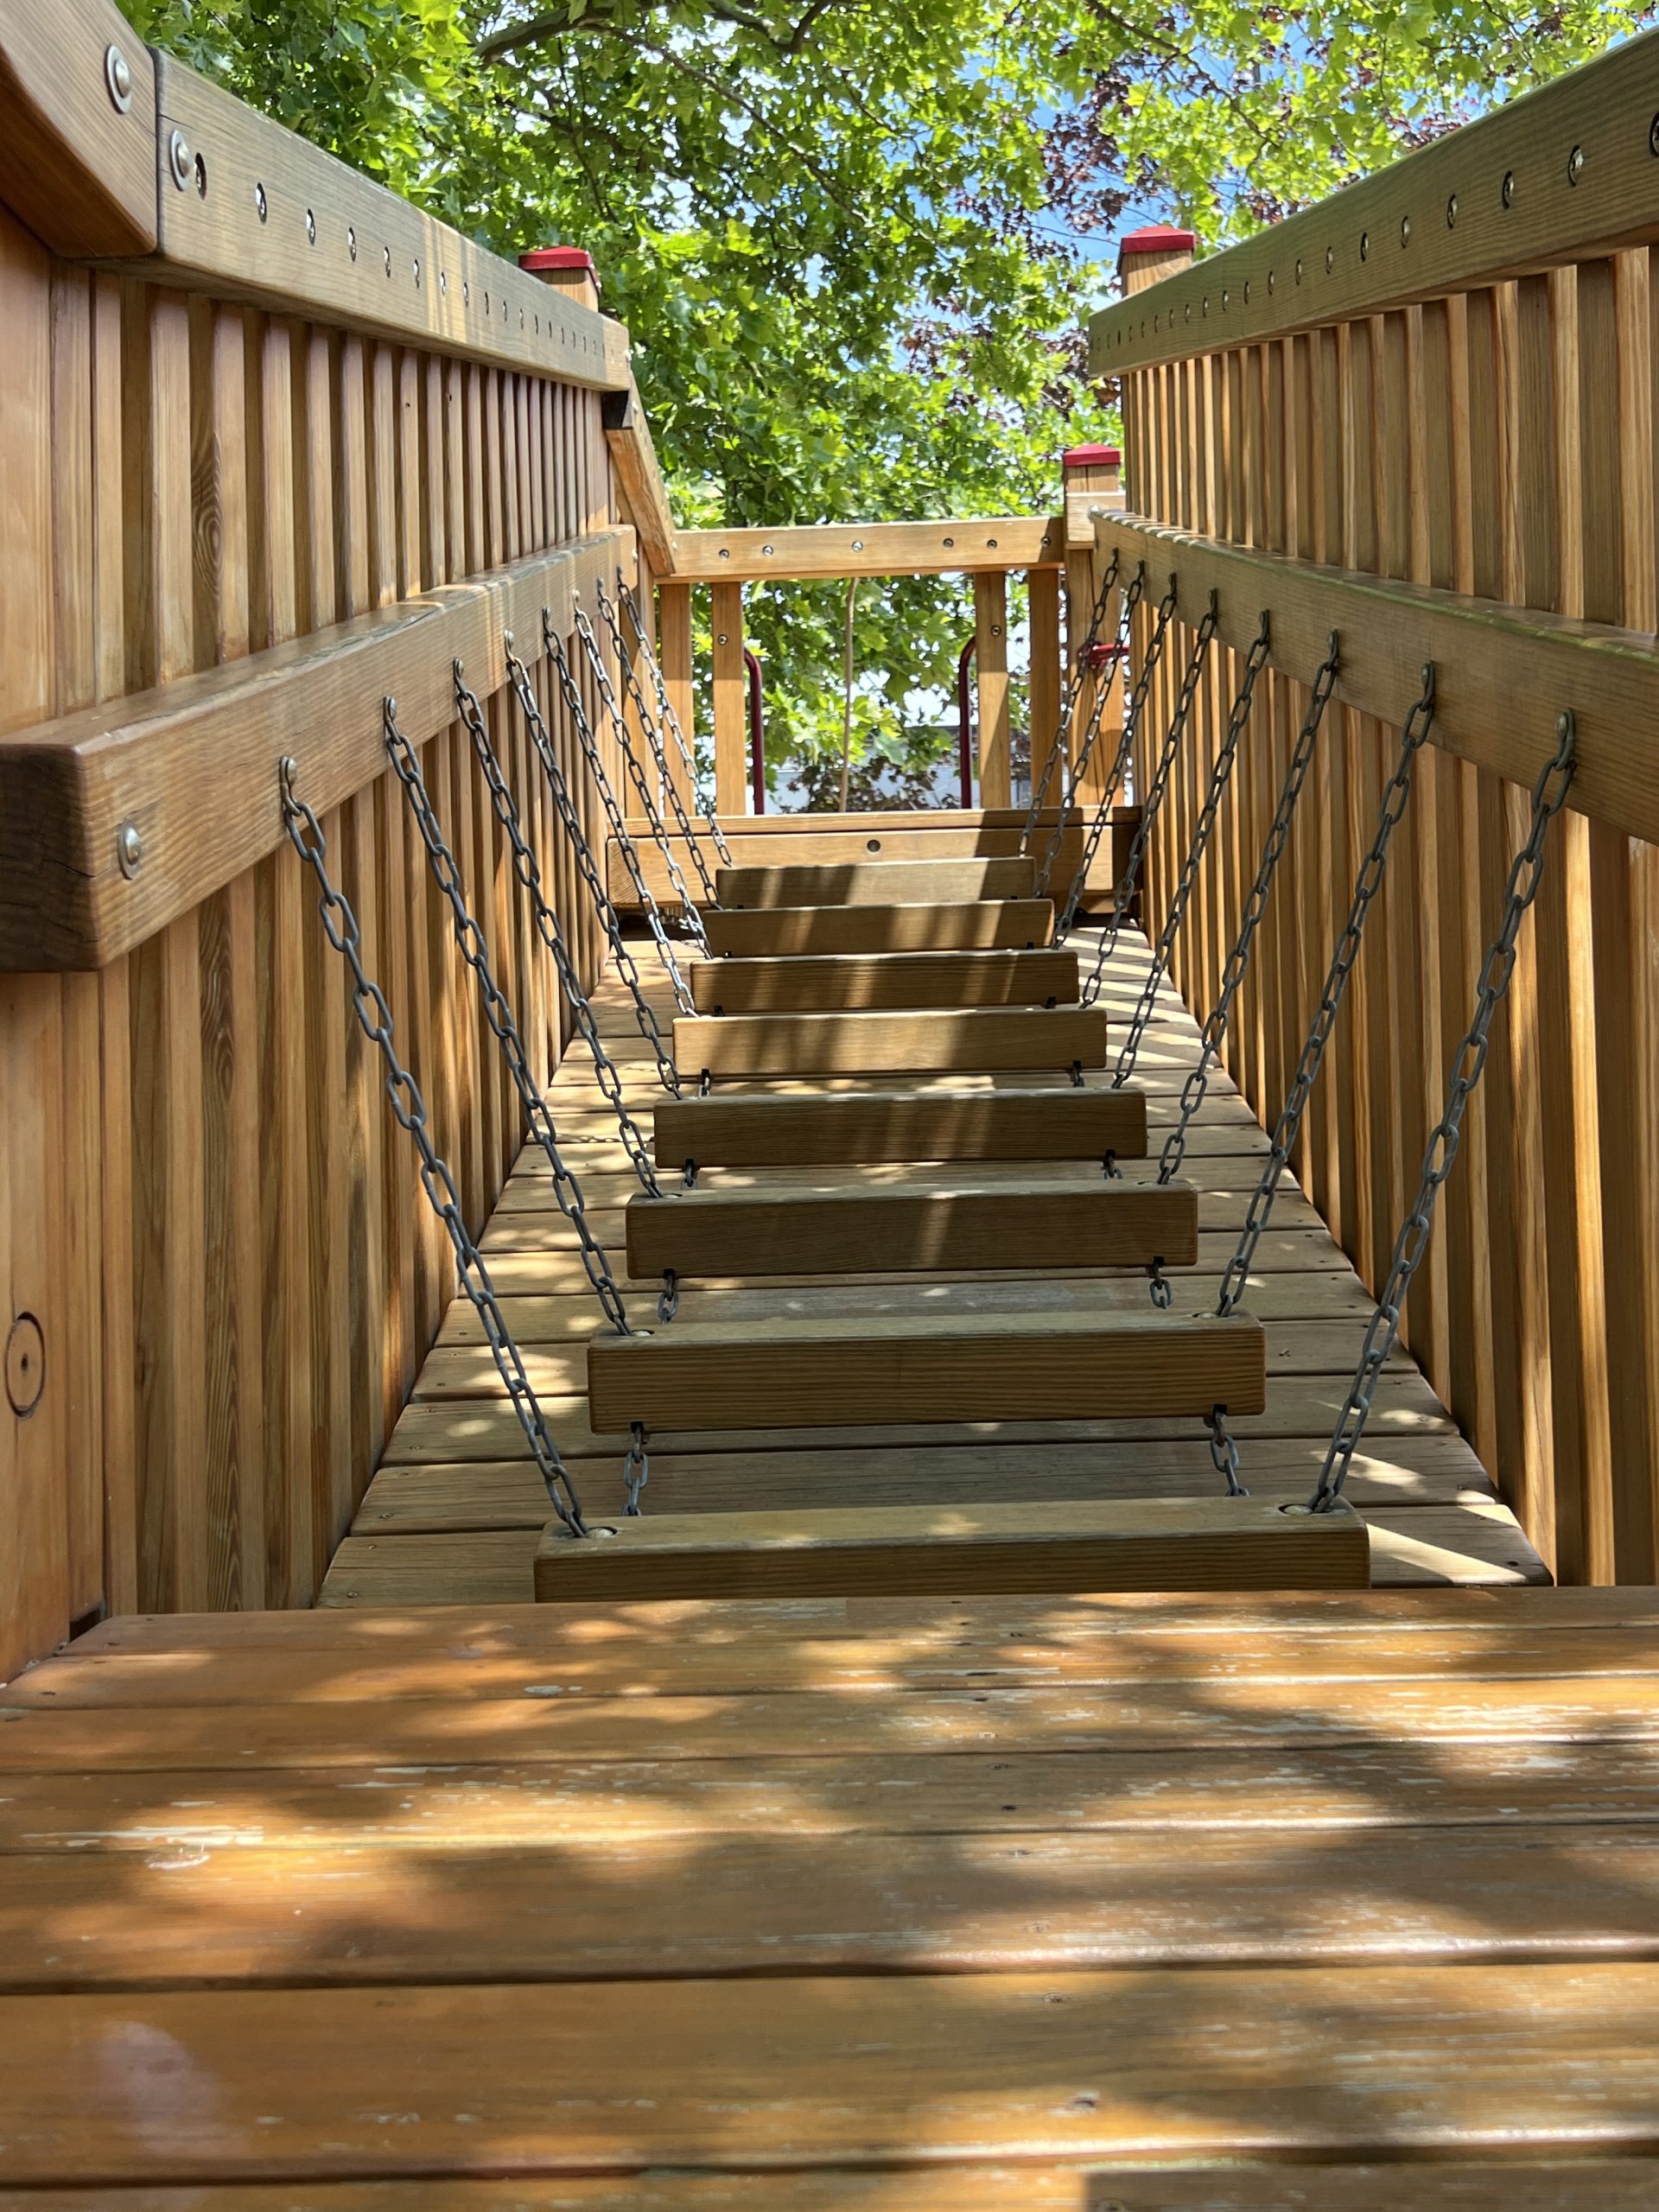 Gardner Field Playground in Denville NJ wiggly wooden bridge